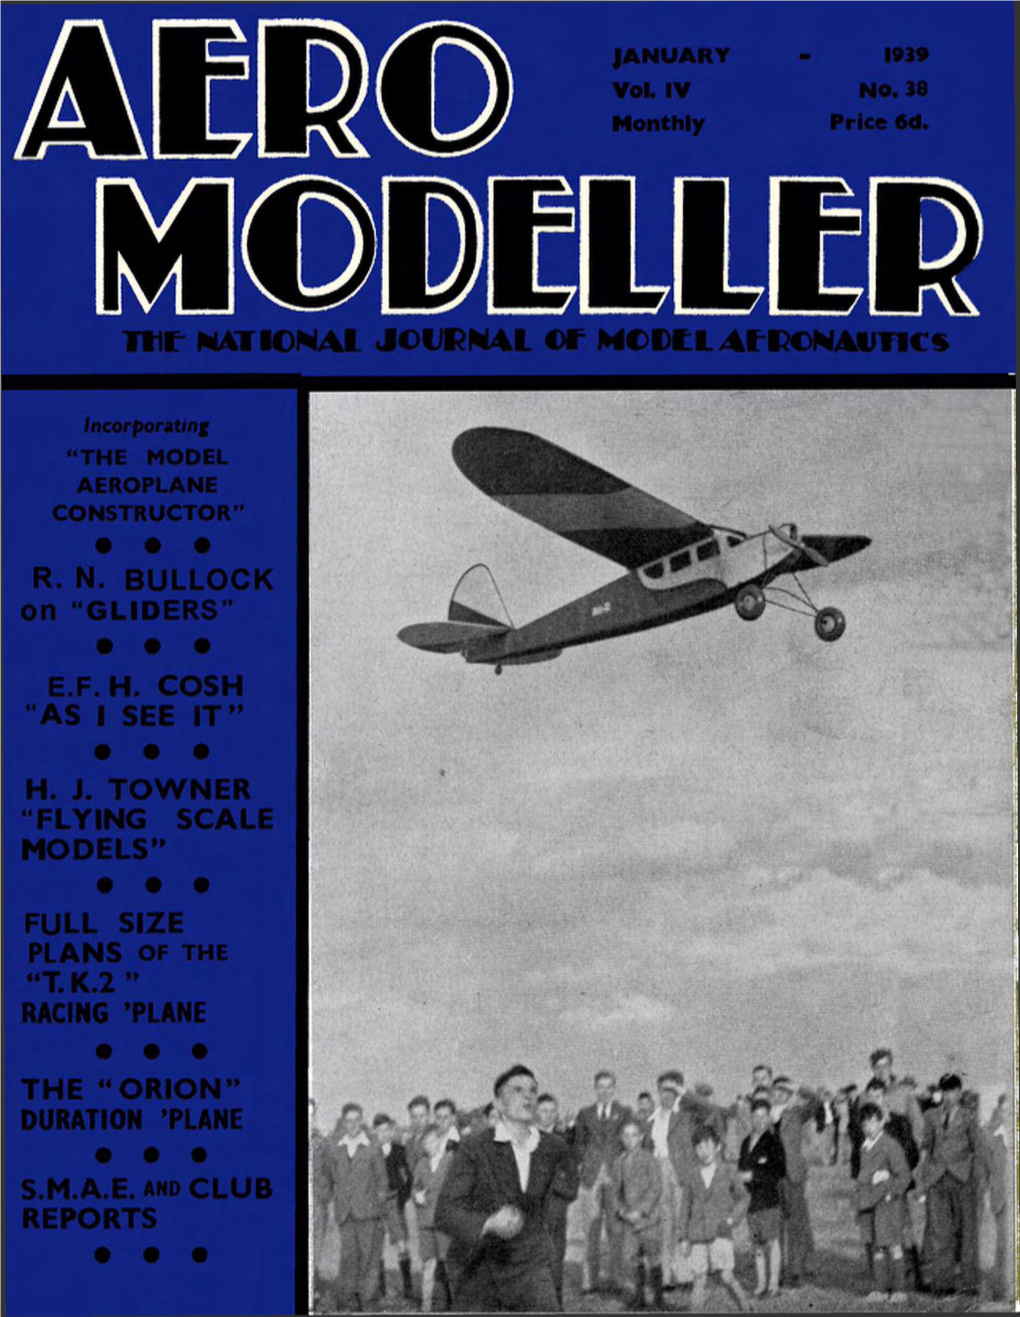 THE AERO-MODELLER January, 1939